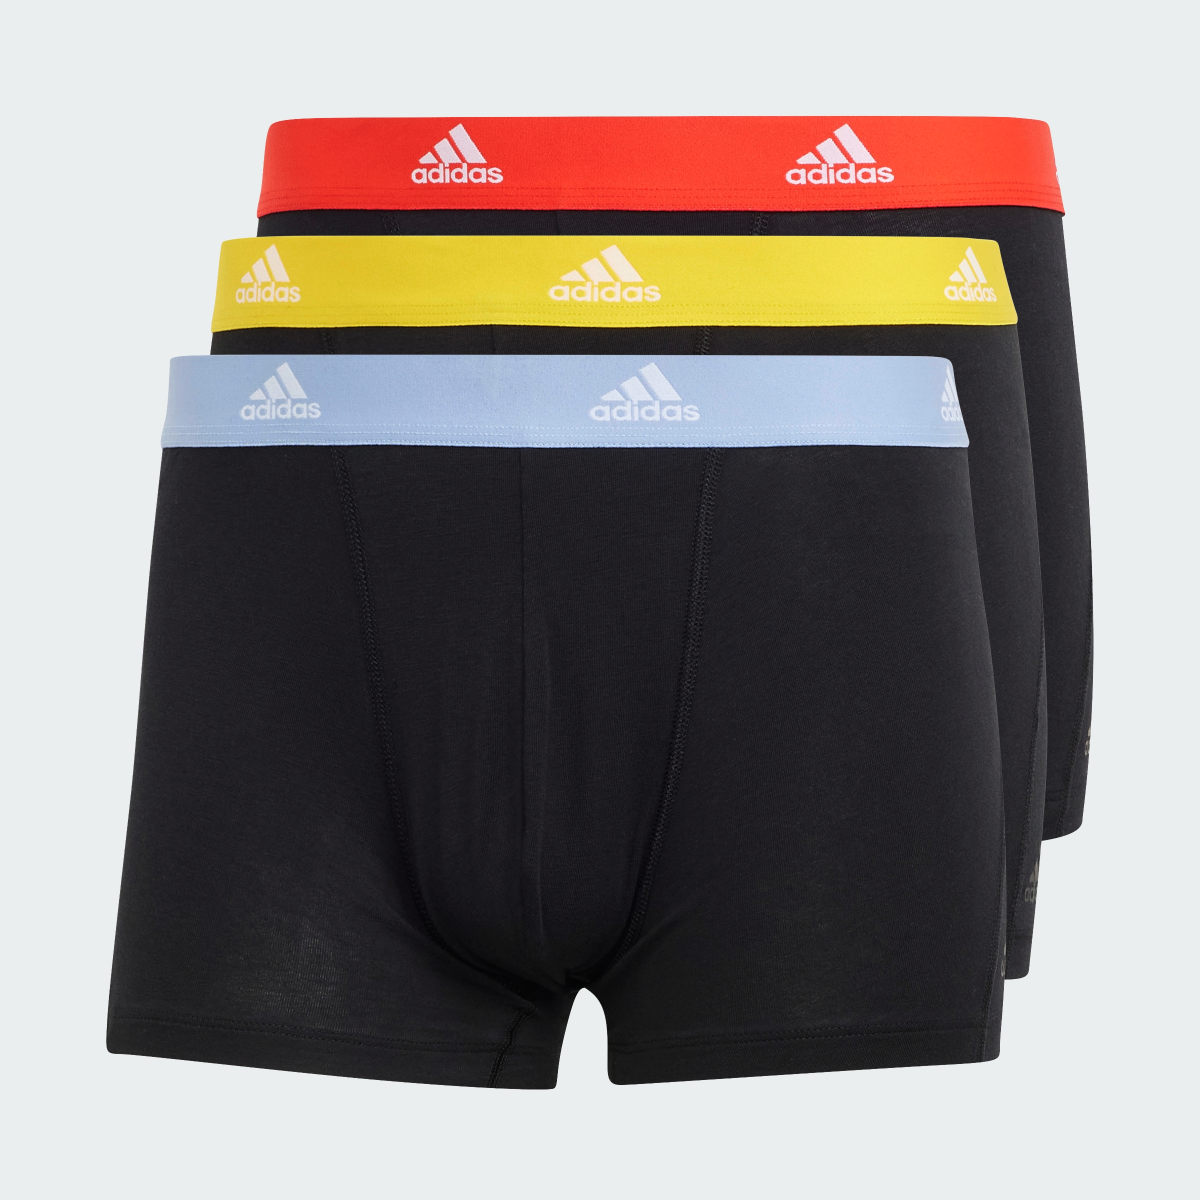 Adidas Active Flex Cotton Trunk Underwear (3 Pack). 6